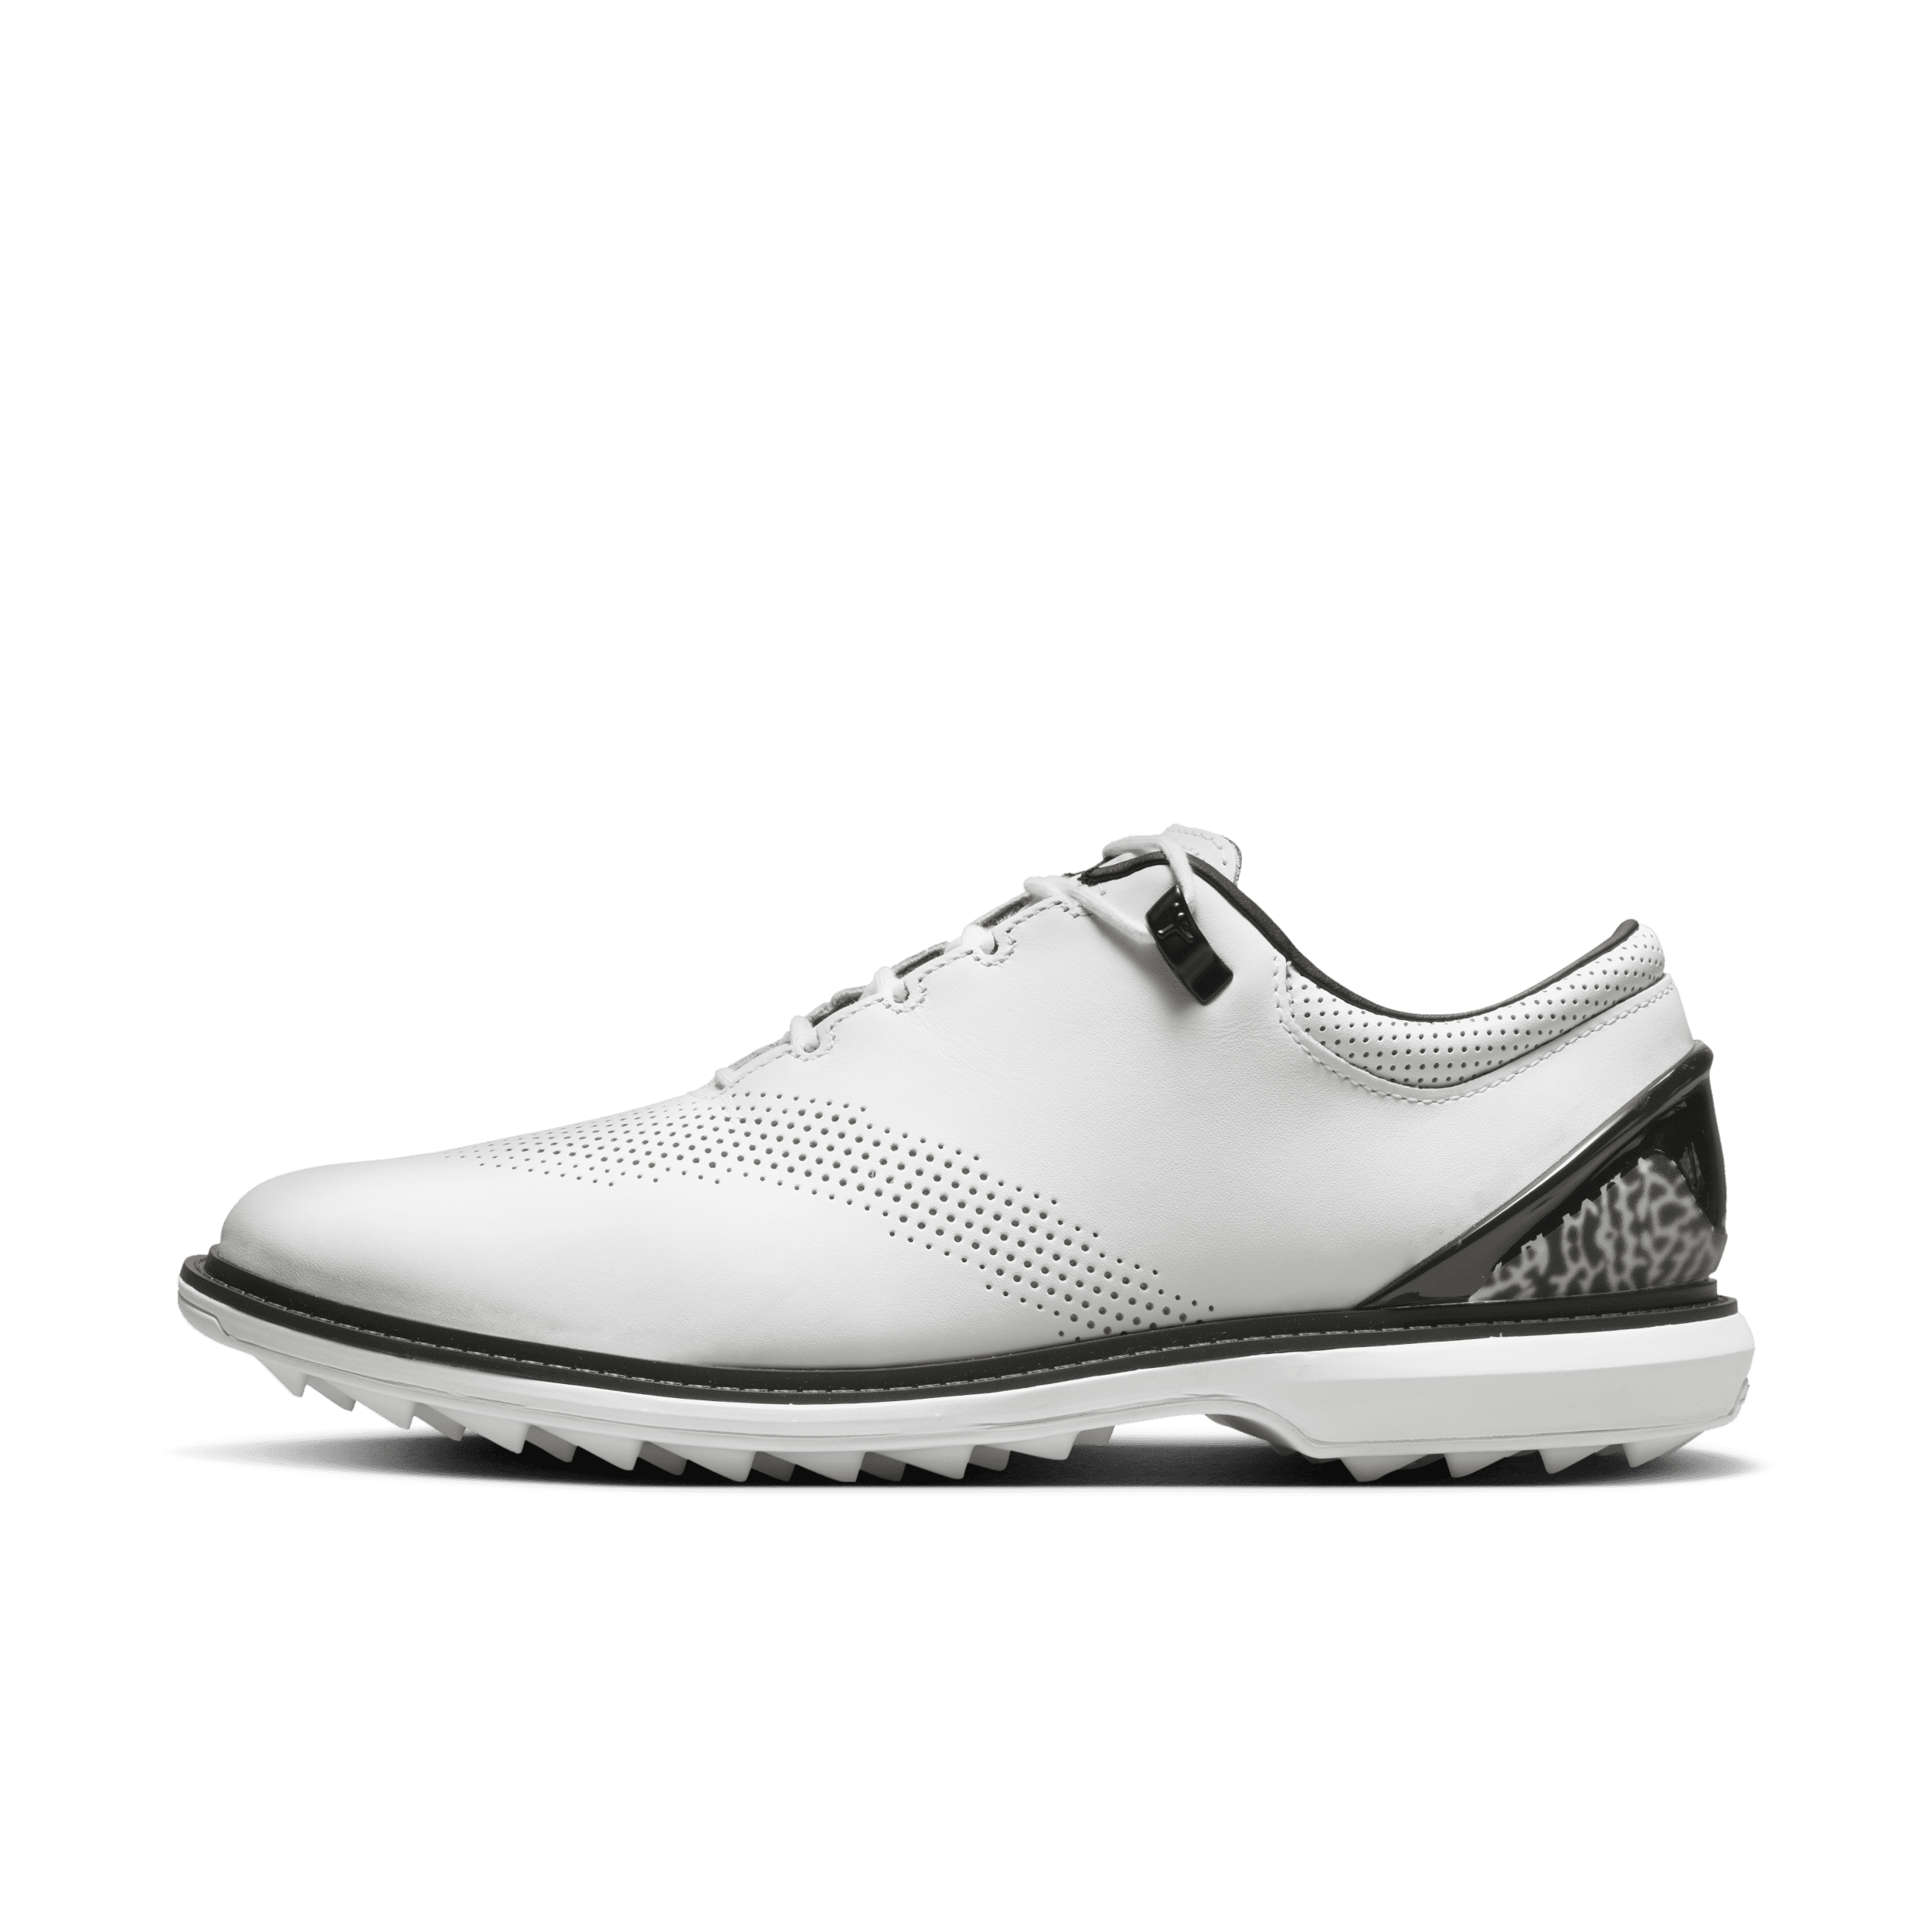 Jordan ADG 4 Zapatillas de golf - Hombre - Blanco